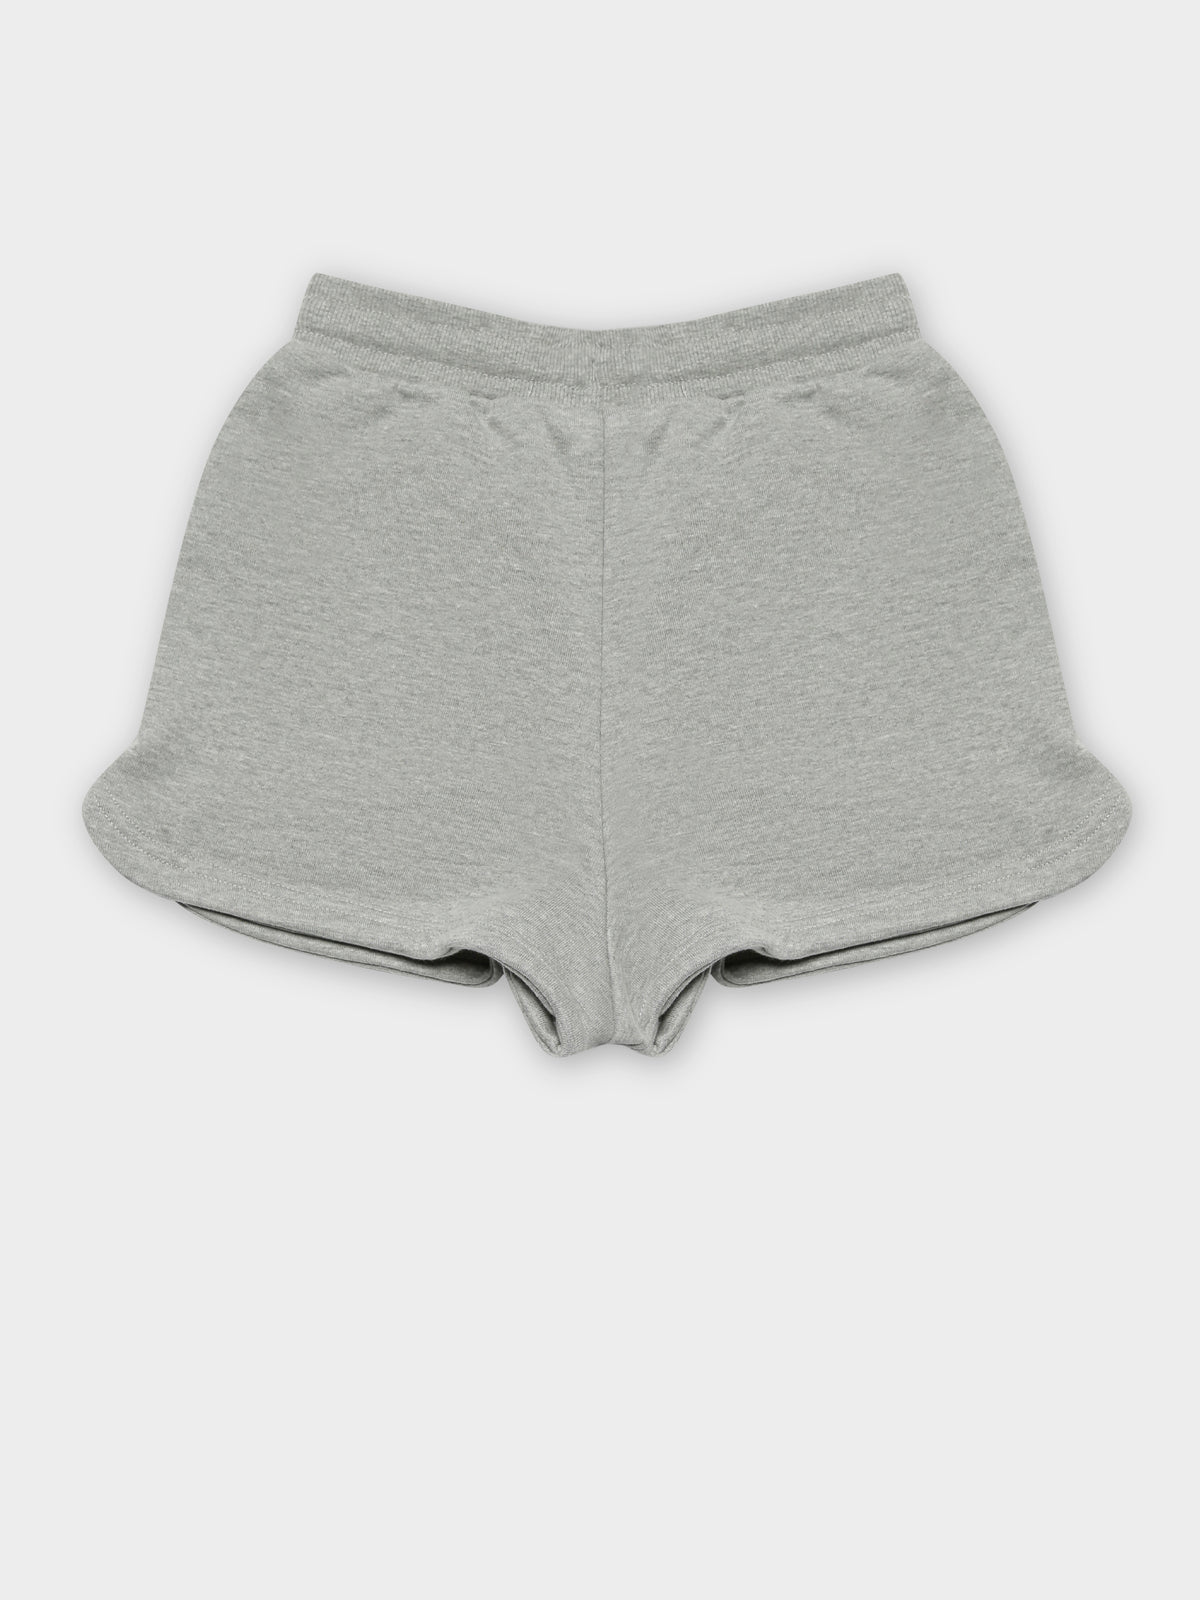 Sarafina Shorts in Grey Marle